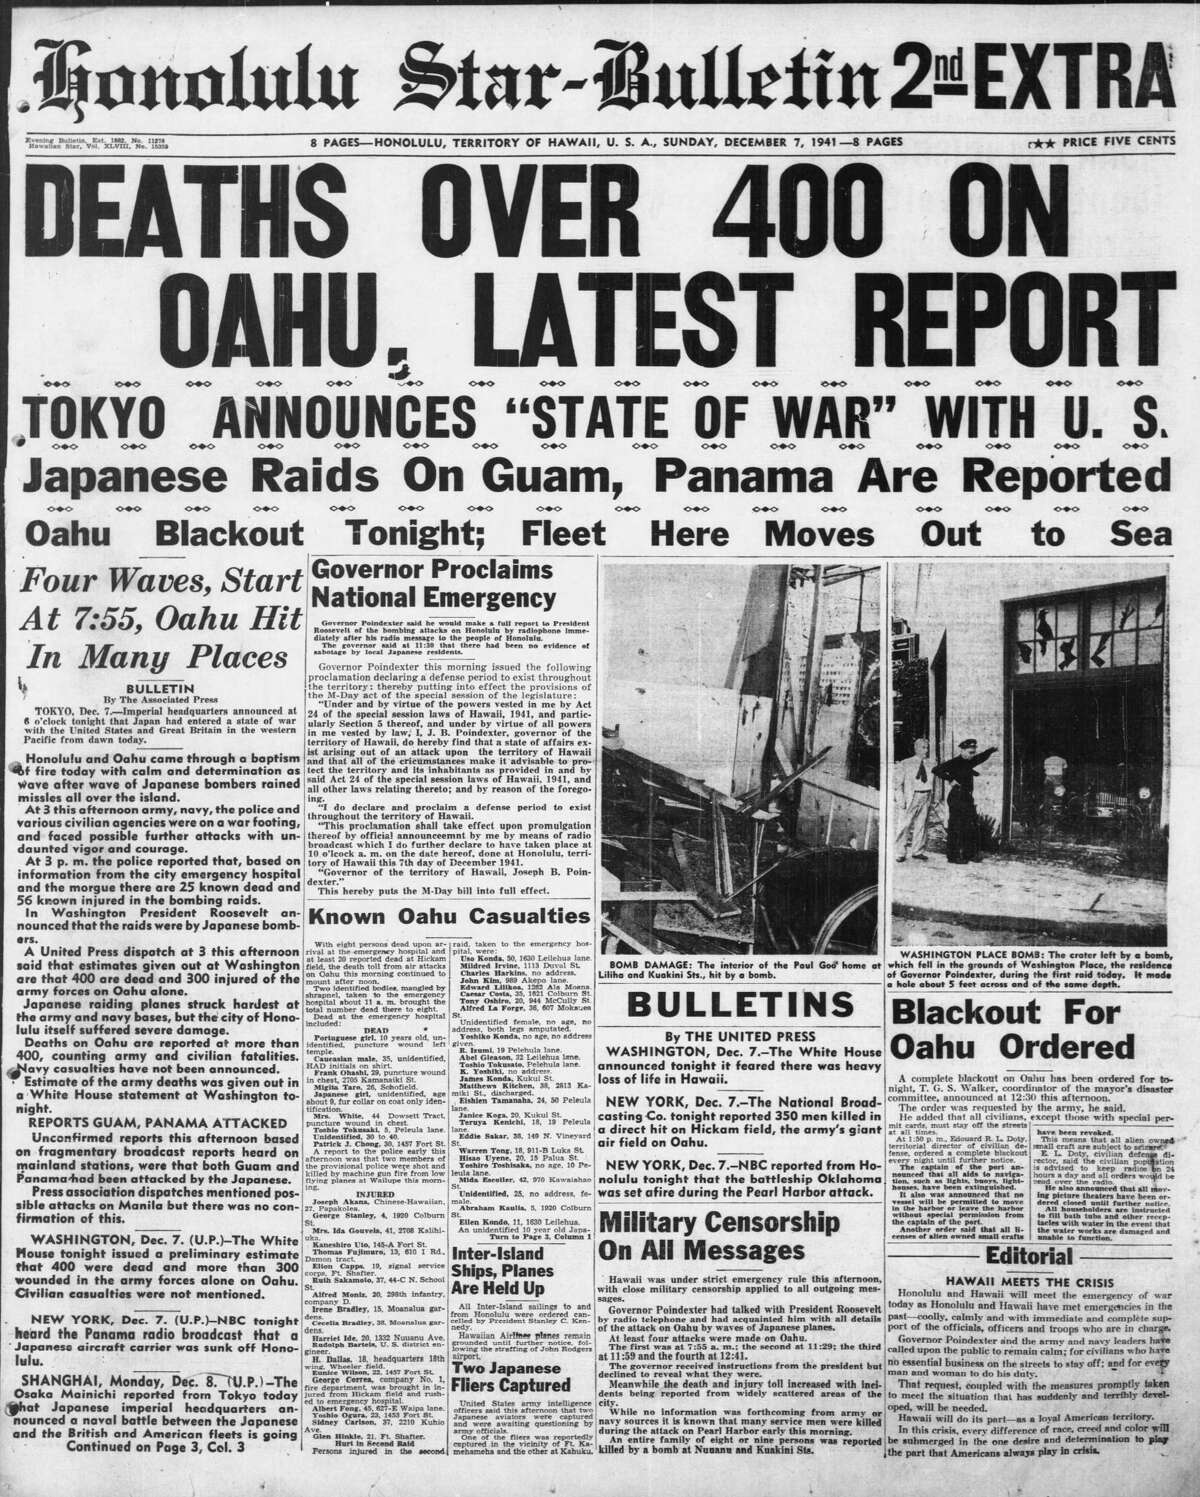 Honolulu Star-Bulletin, December 7, 1941